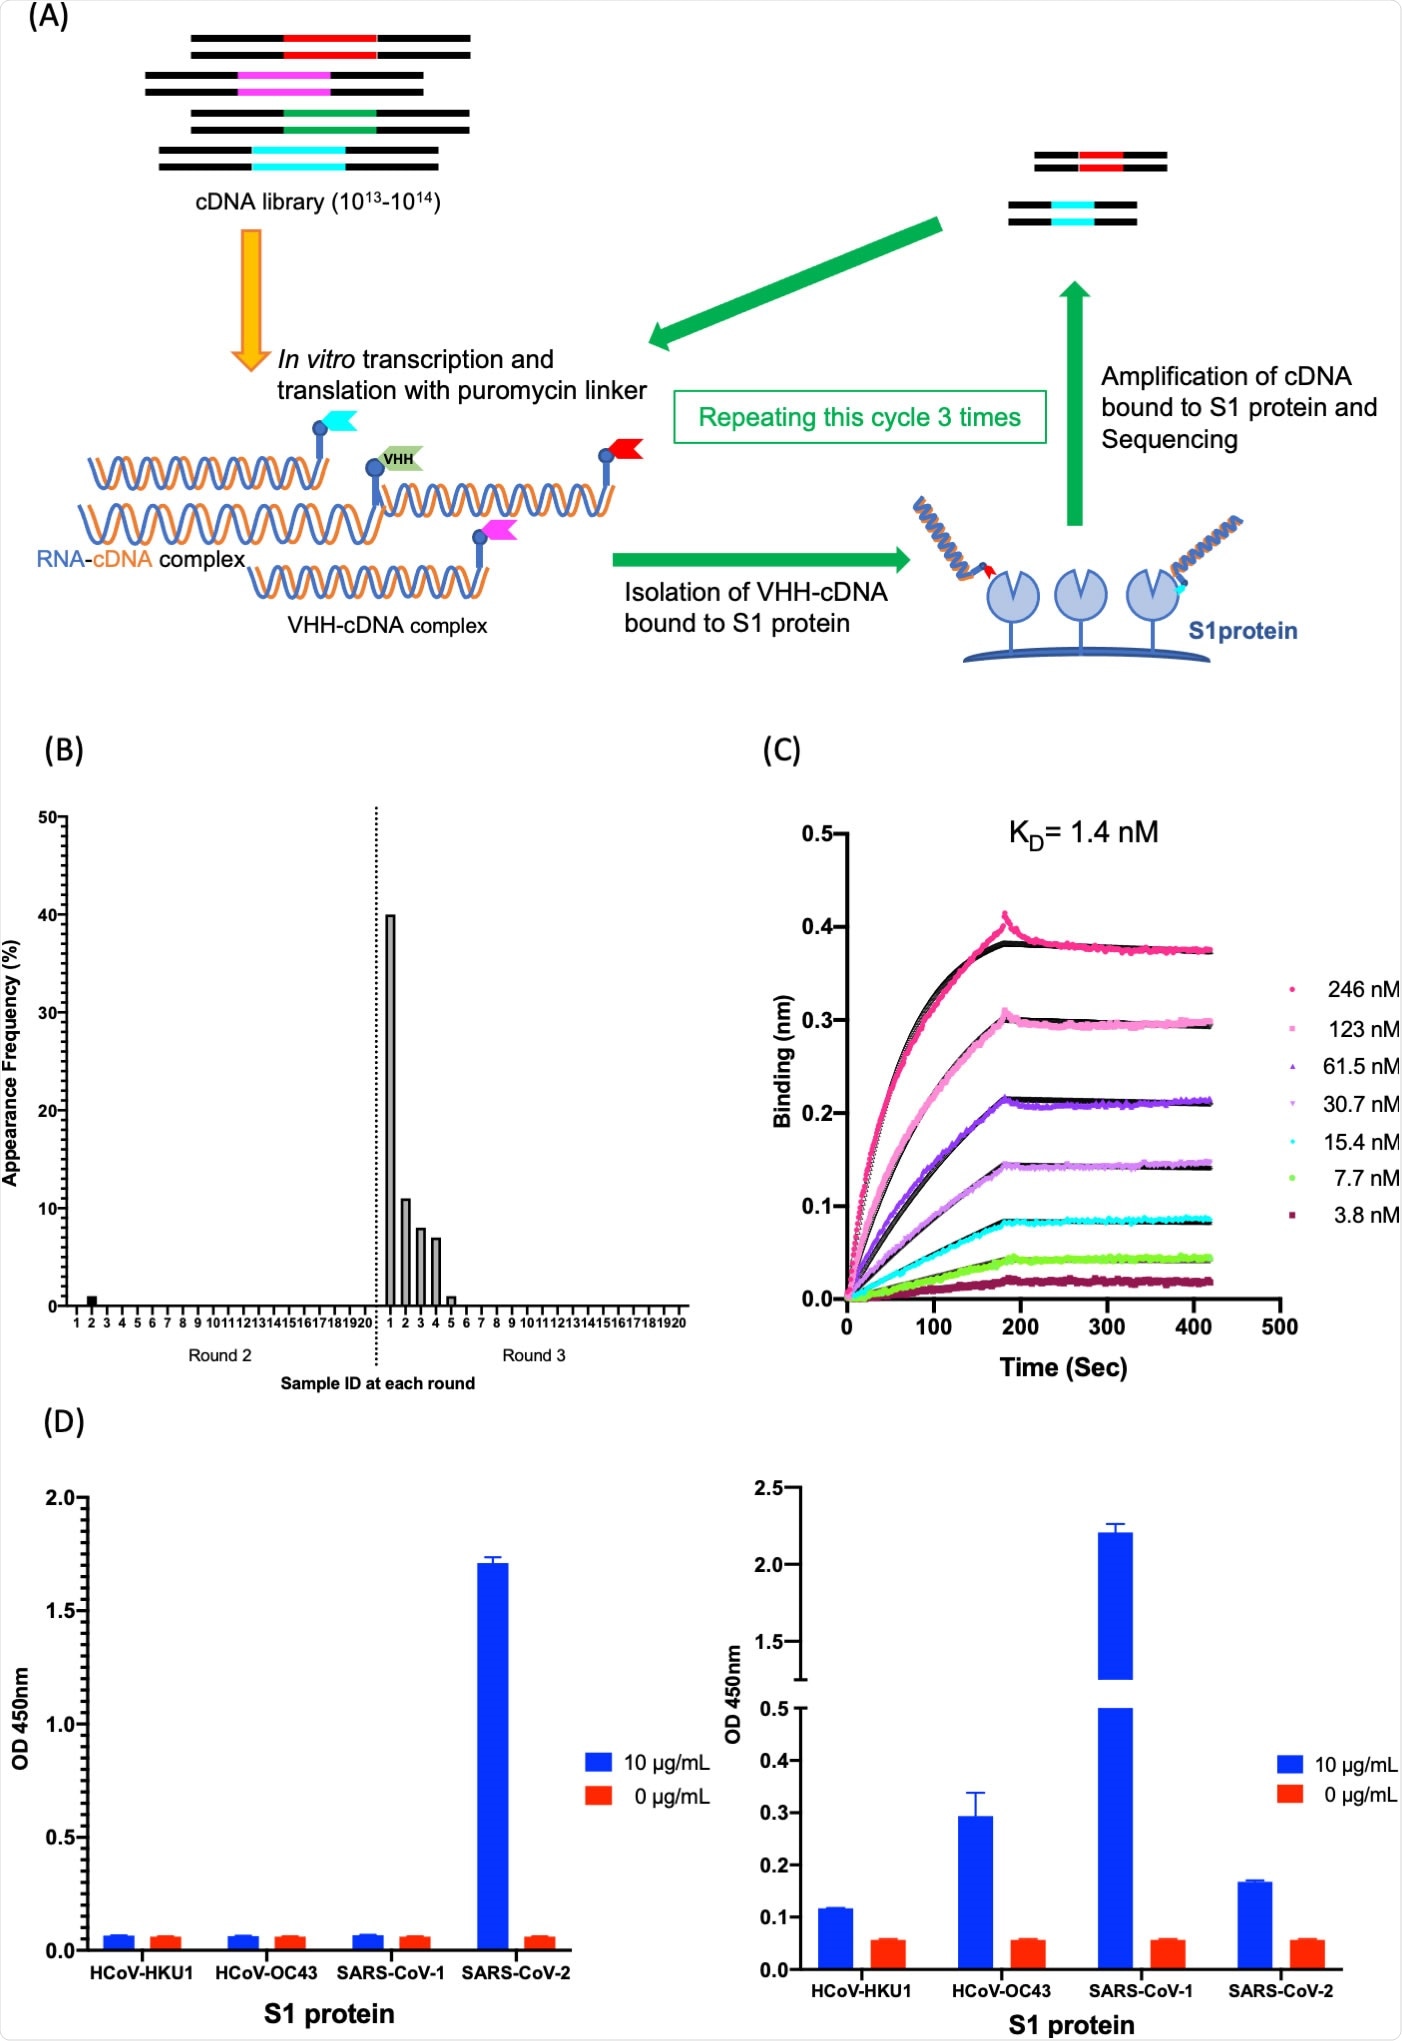 Isolamento e caratterizzazione di K-874A. (A) Disegno schematico che mostra selezione in vitro di VHHs contro la proteina di SARS-CoV-2 S1 facendo uso della visualizzazione di VHH-cDNA. La trascrizione e la traduzione in vitro di libreria di VHH-cDNA formano VHH collegato al suo mRNA con un linker di puromycin. il cDNA del mRNA collegato inverso-è stato trascritto ed il complesso di VHH-cDNA è stato prodotto. la proteina vincolata S1 del complesso di VHH-cDNA di Alto-affinità è stata isolata ed il suo cDNA è stato ampliato. Tre giri della selezione sono stati realizzati, le librerie del cDNA dai giri 2 e 3 sono state ordinate ed i candidati di anti-SARS-CoV-2 VHH sono stati tradotti. (B) distribuzione di frequenza delle sequenze aminoacidiche che corrispondono ai candidati dell